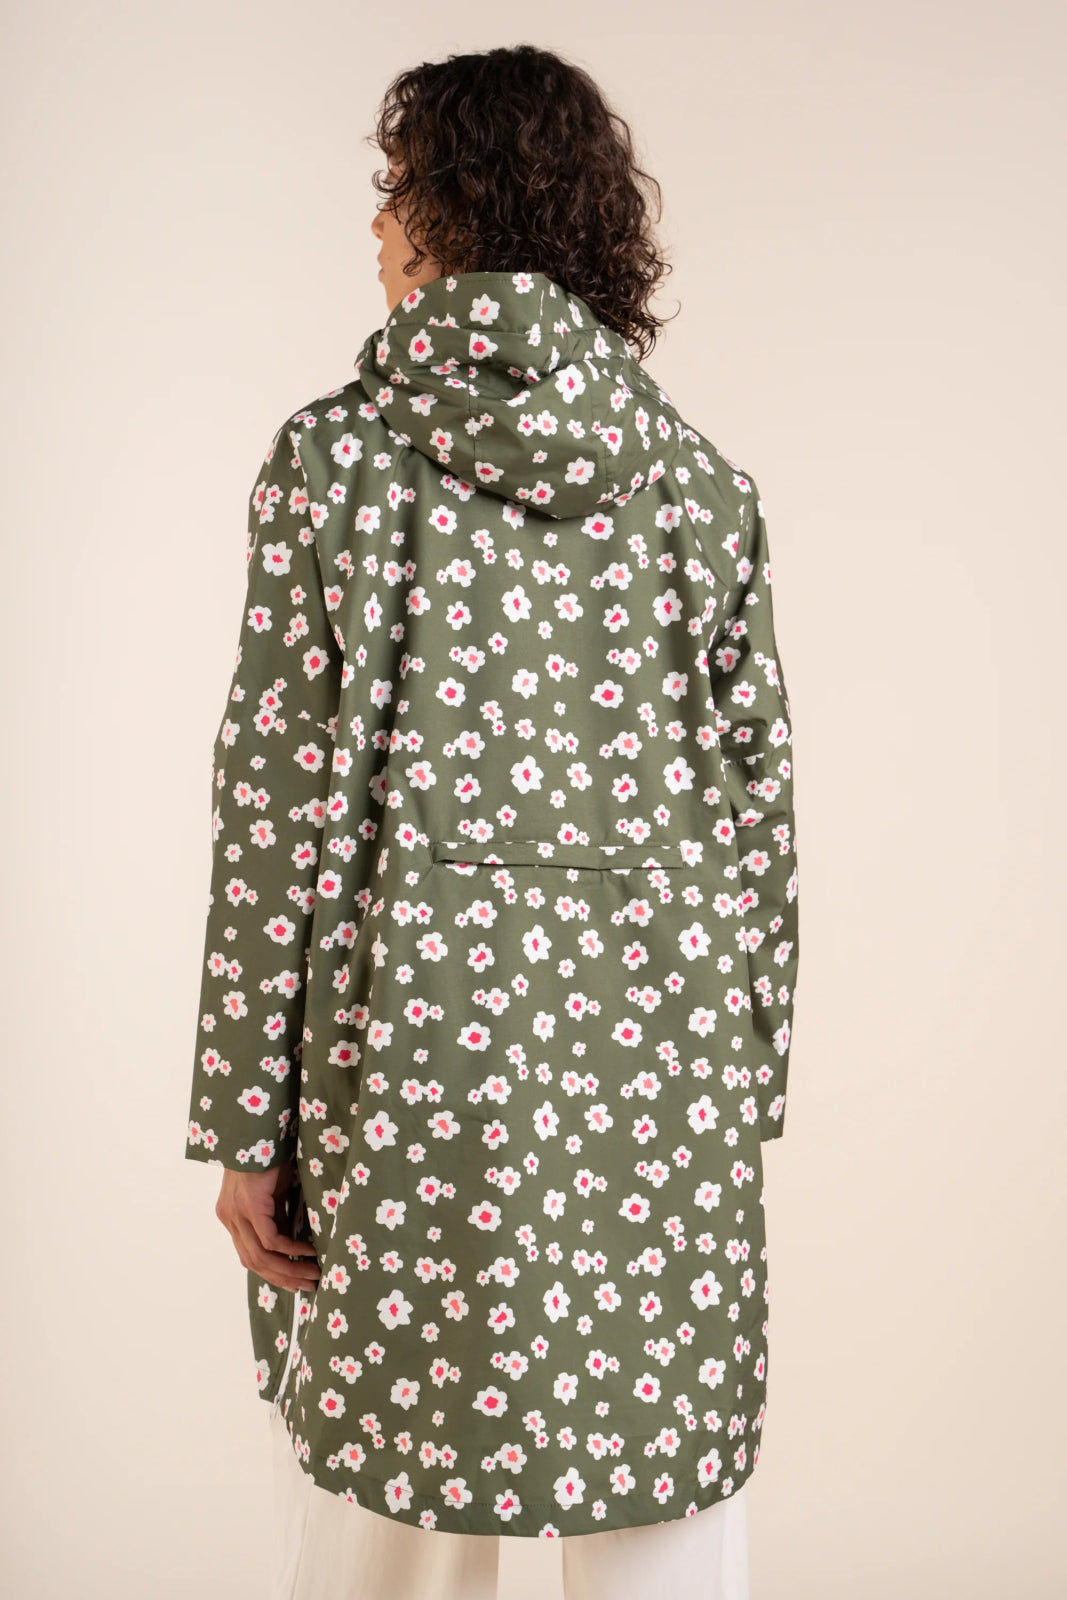 Liberté - Rain cape - Baggable windbreaker jacket - Flotte #couleur_prairie